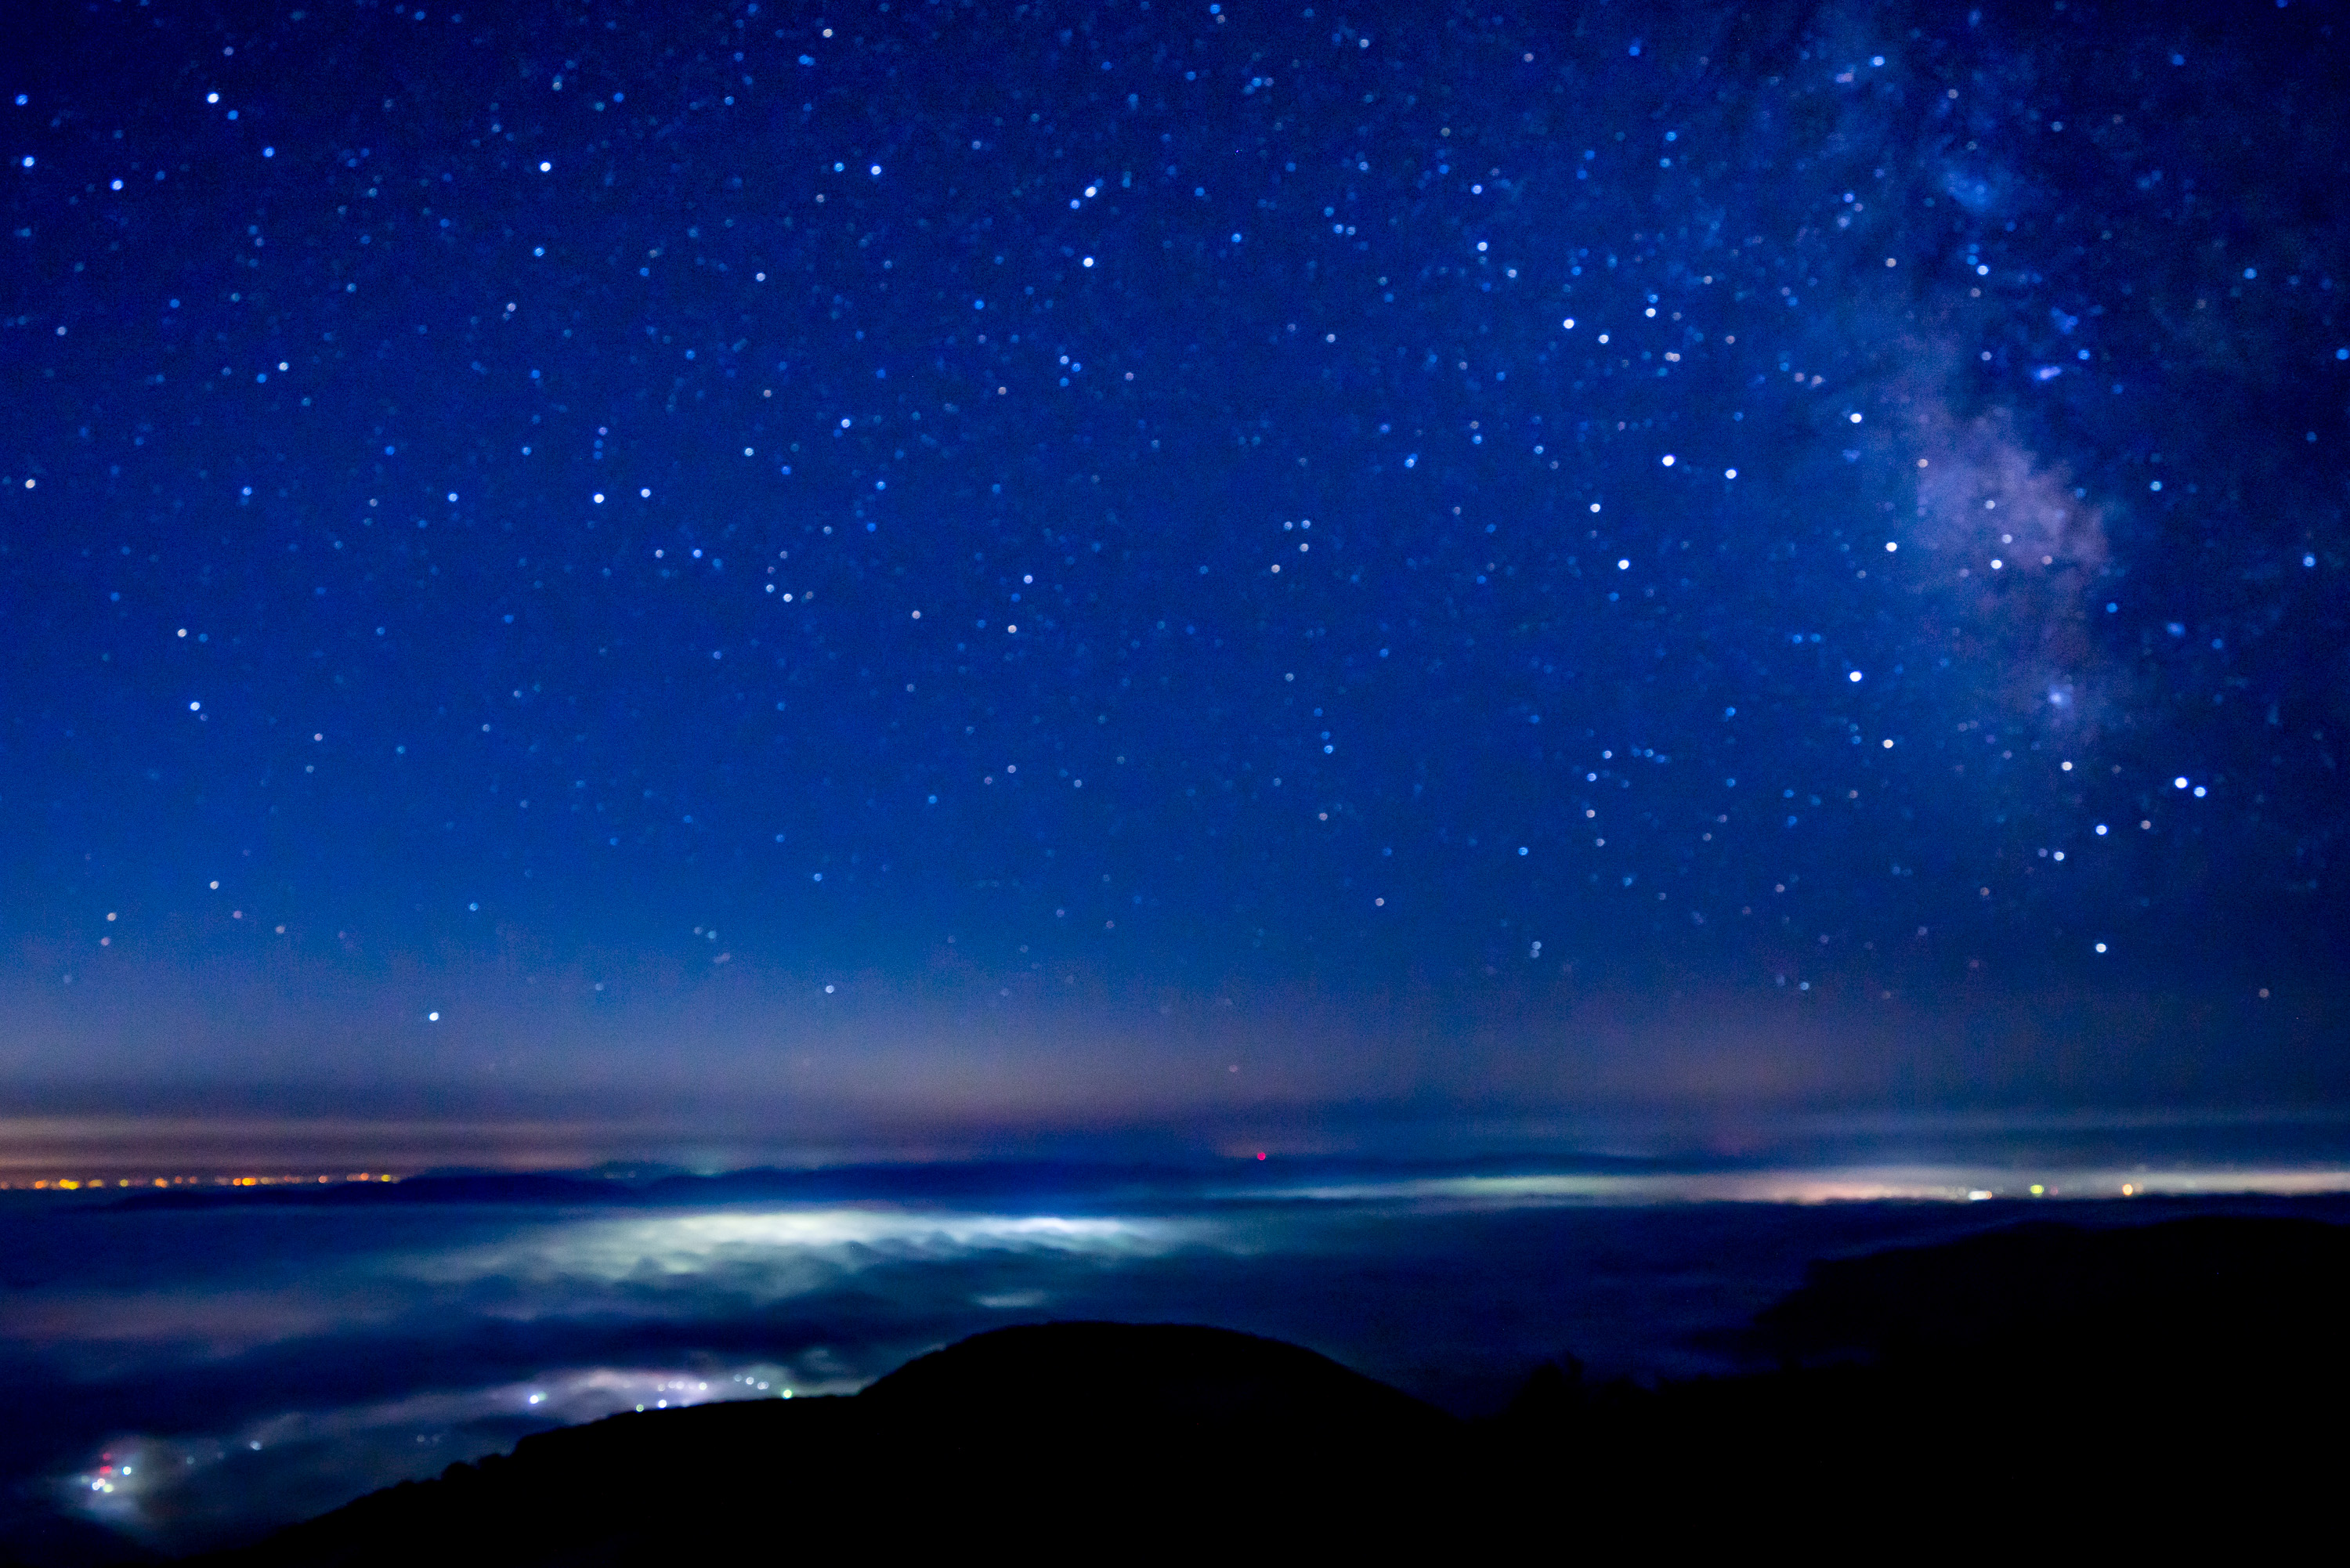 ドンデン山で星空撮影会 眼下に広がる雲海の下の夜景が幻想的過ぎる 旅館番頭の佐渡観光情報ブログ